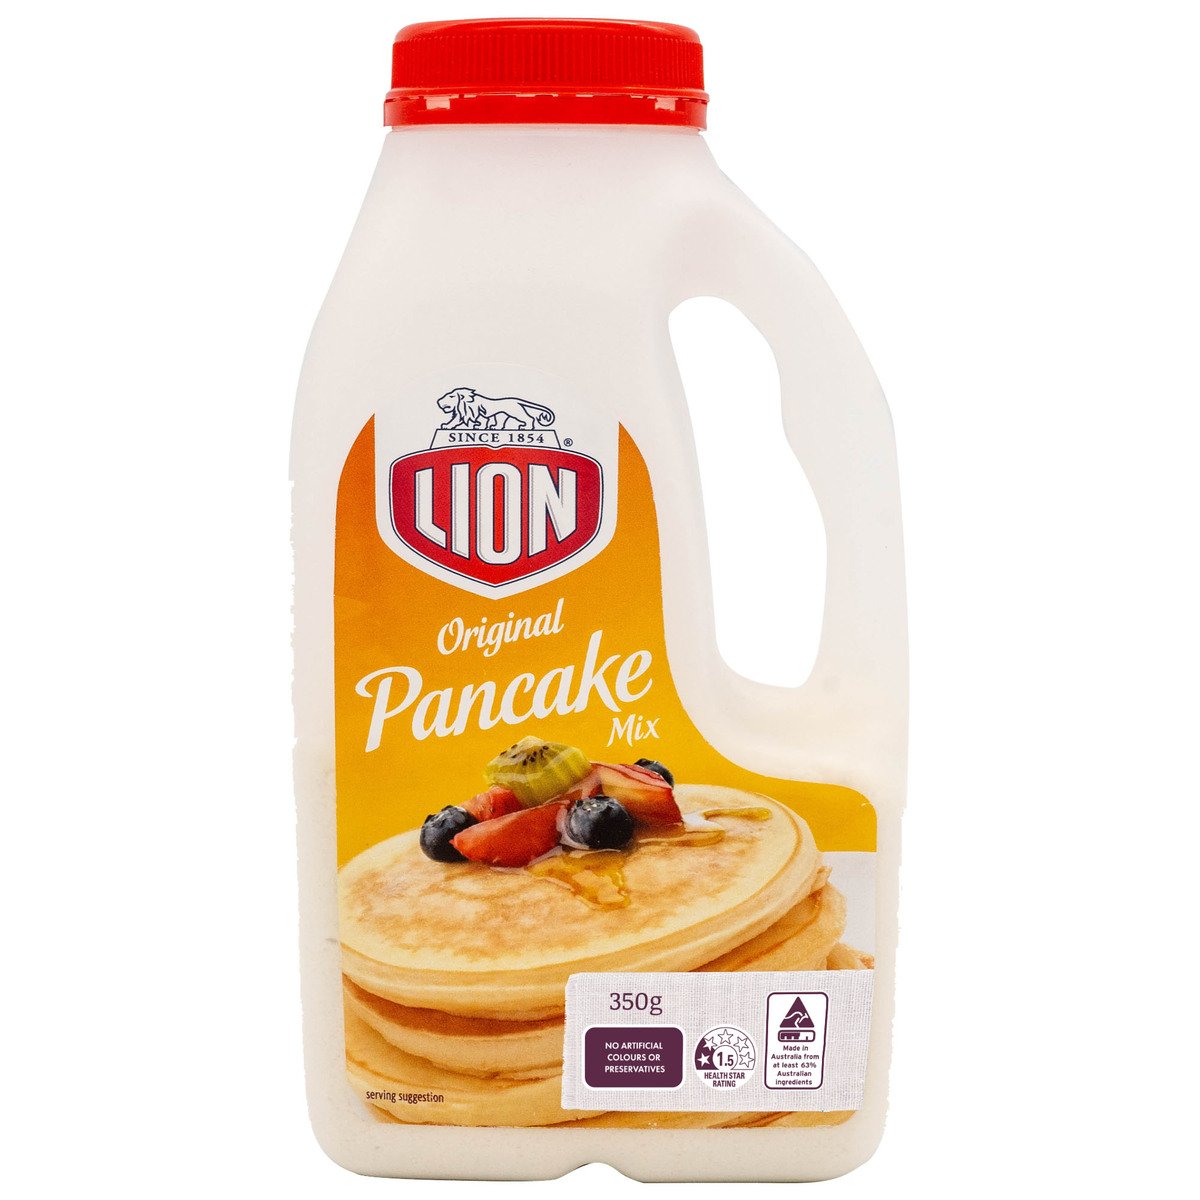 Lion Original Pancake Mix 350 g